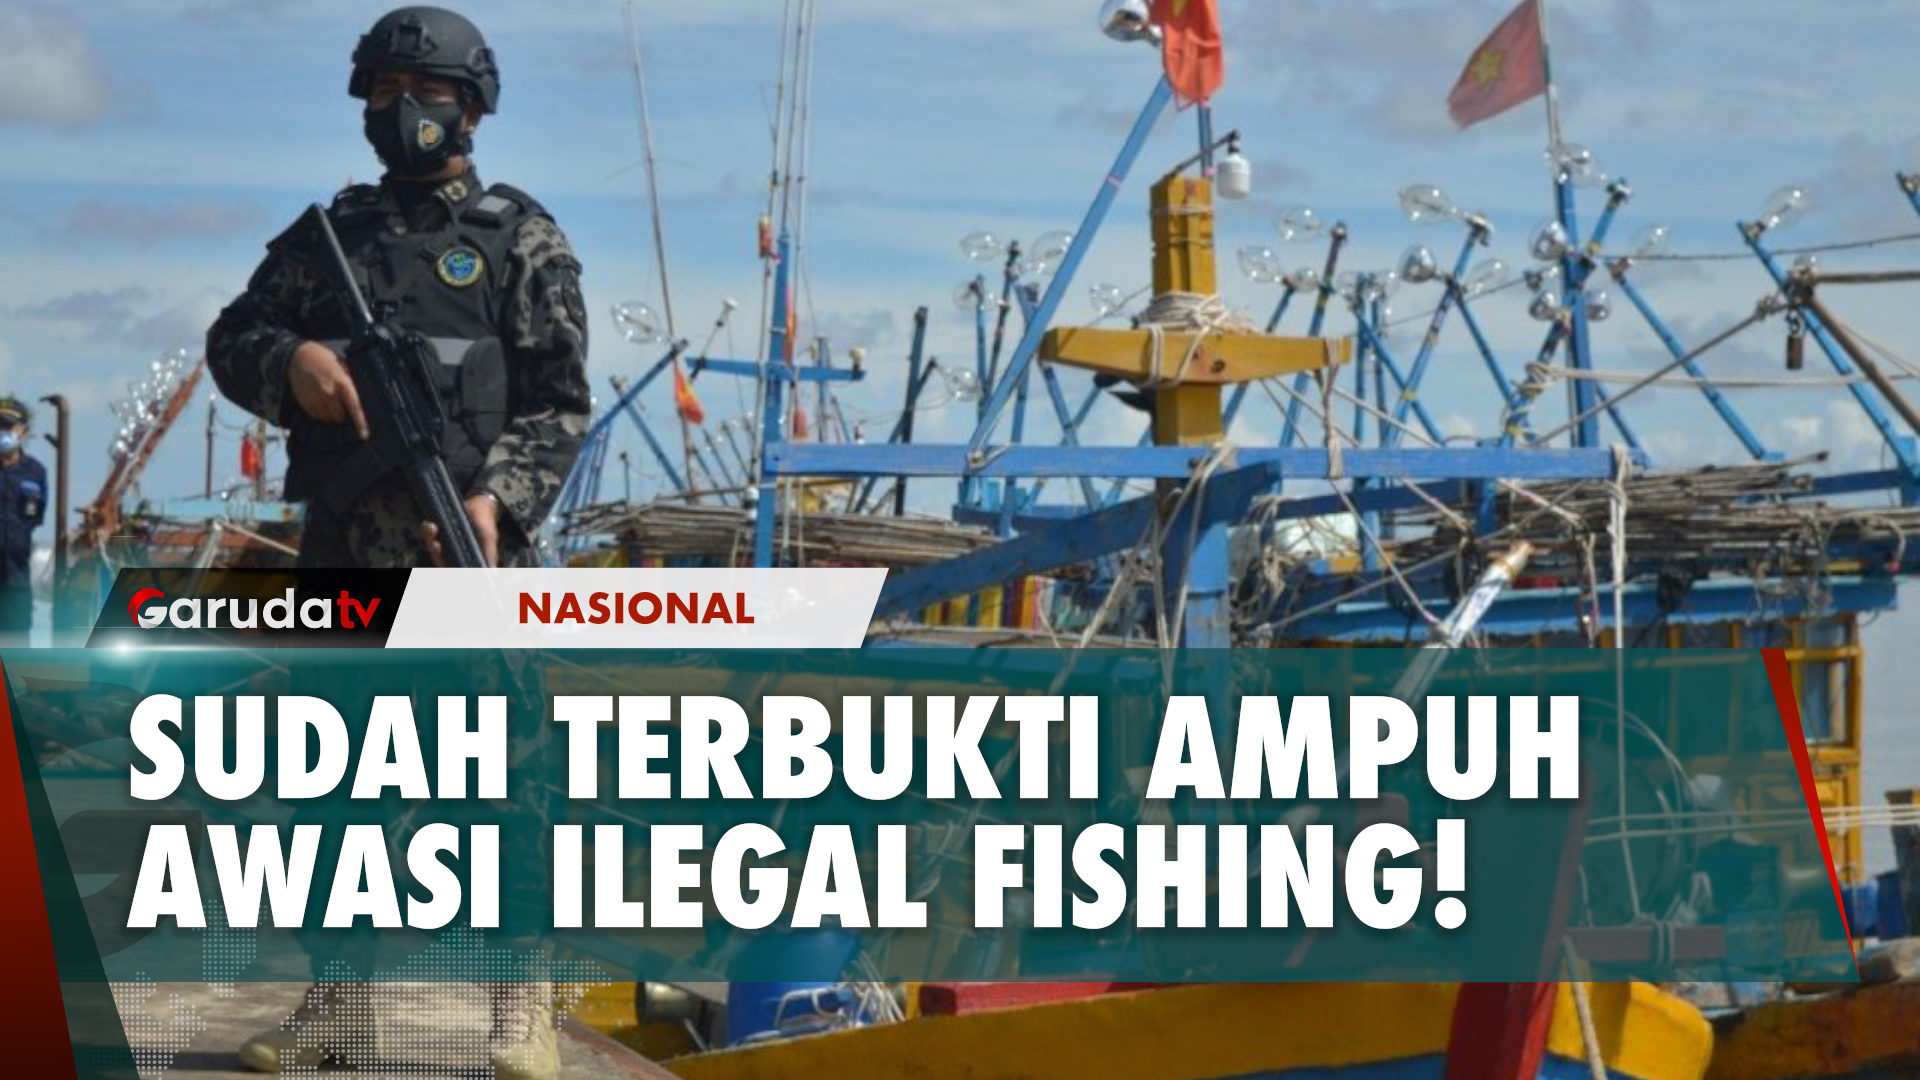 Kontrol Segala Aktivitas Penangkapan Ikan, KKP Terapkan Teknologi Pengawasan Terintegrasi